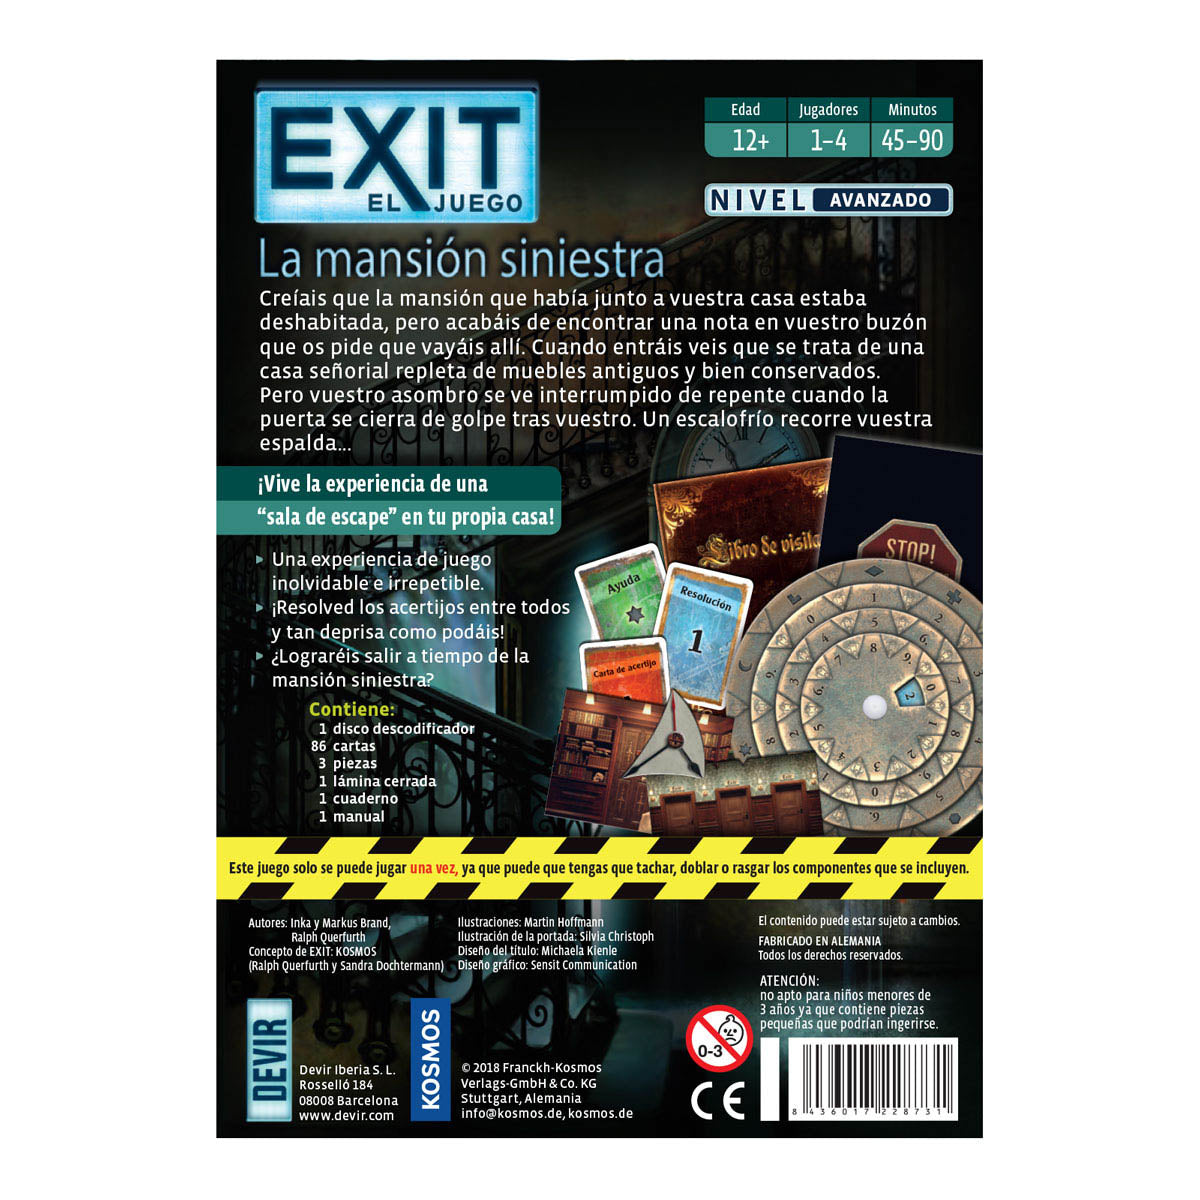 Exit Devir: La mansión siniestra - Juego de Enigmas